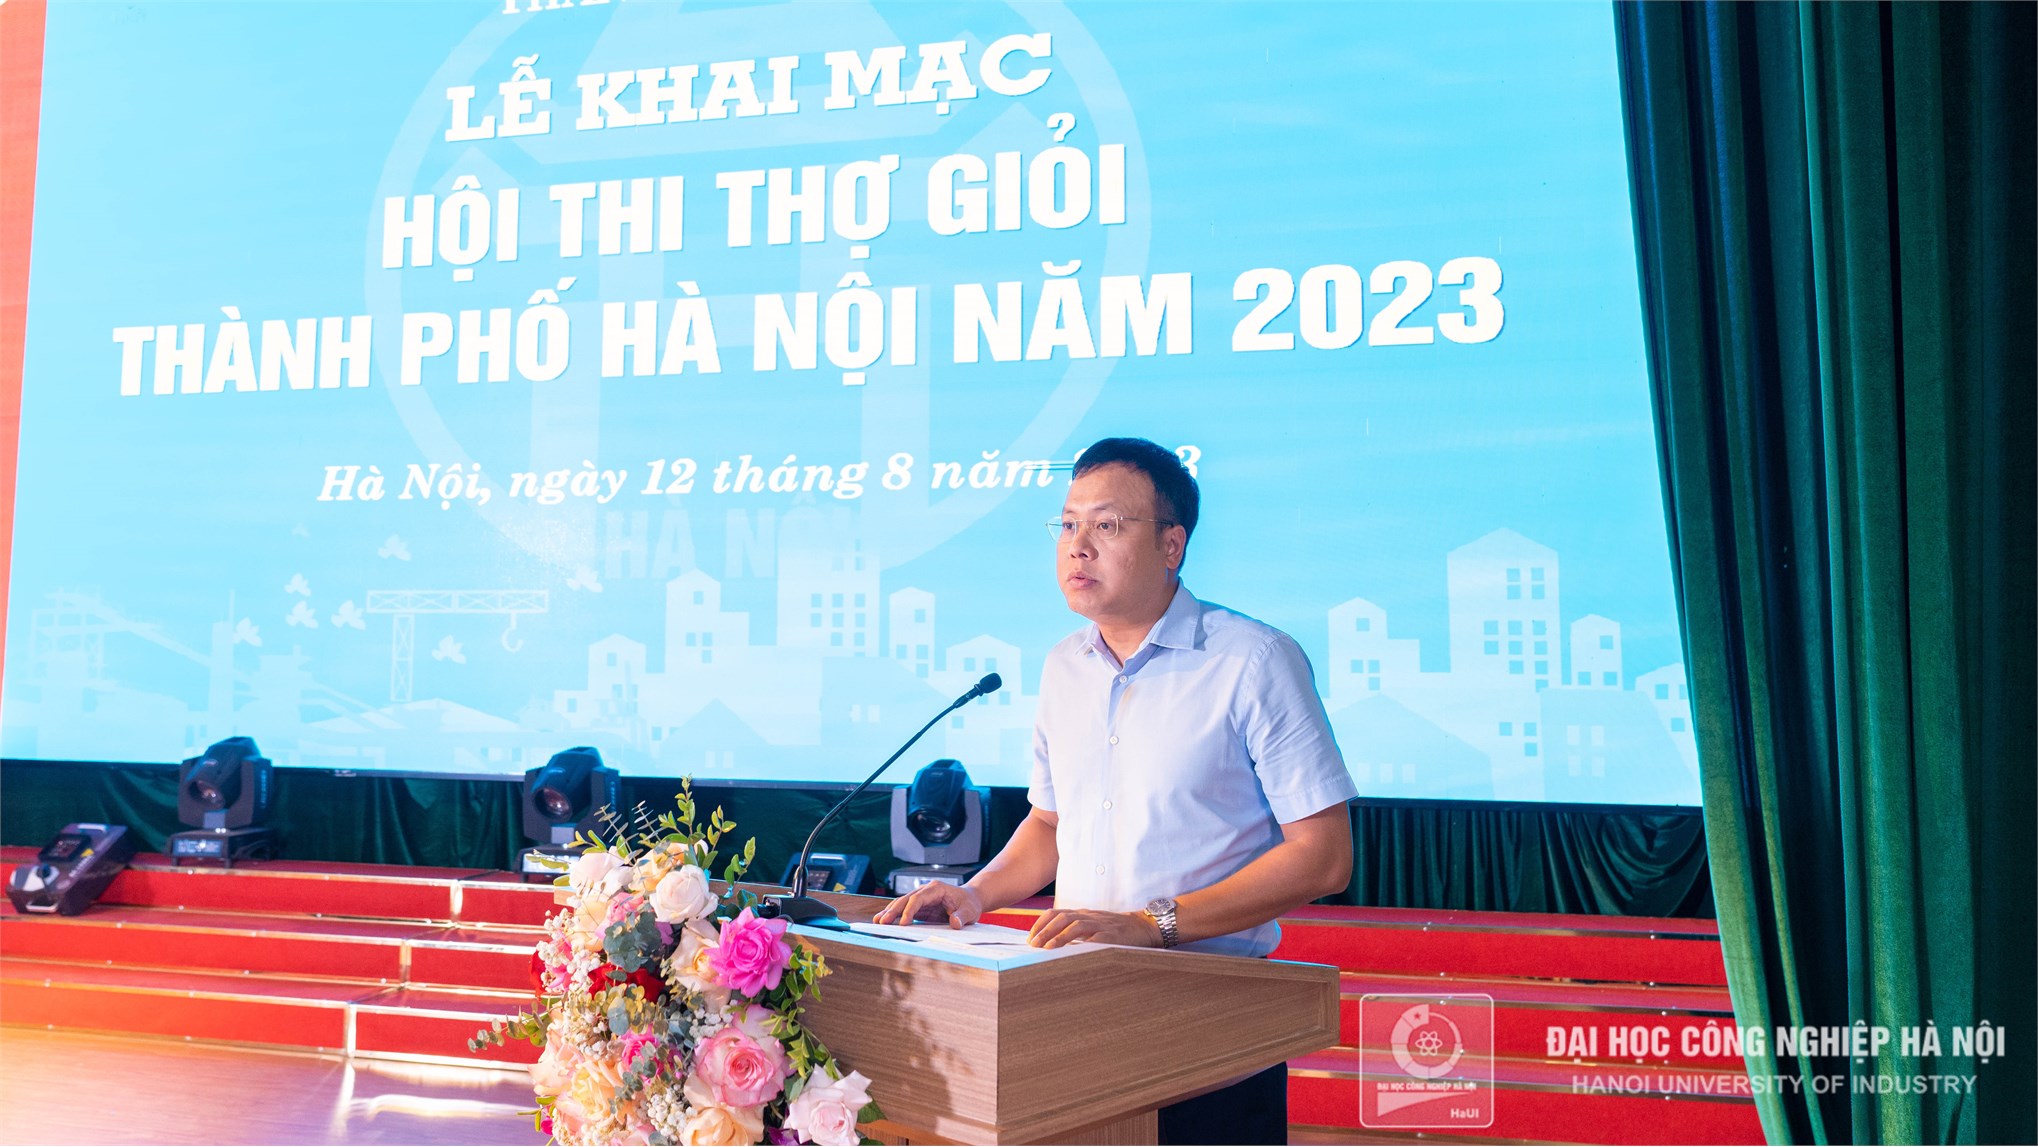 Hội thi thợ giỏi TP Hà Nội 2023 tổ chức tại Trường Đại học Công nghiệp Hà Nội